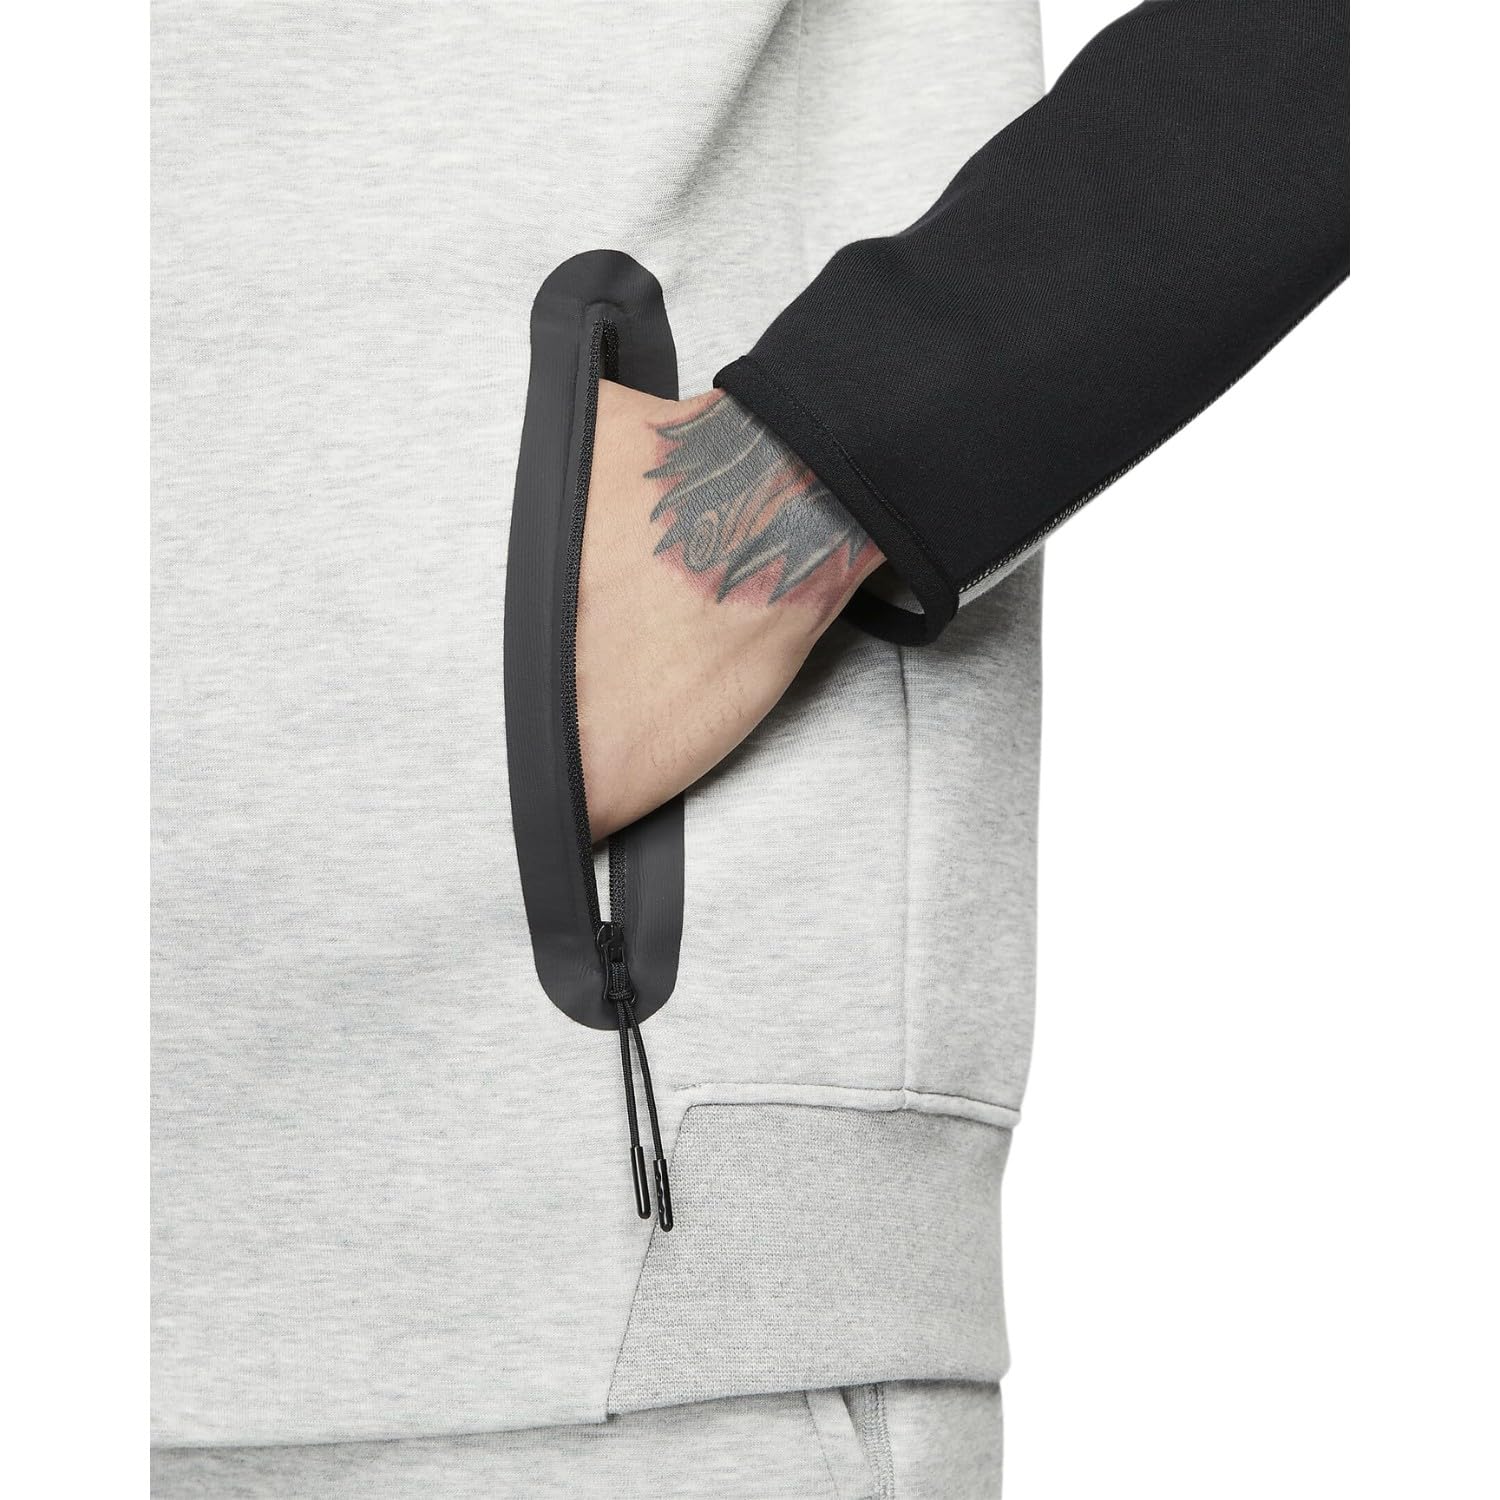 Nike Sportswear Tech Fleece Windrunner Men's Full-Zip Hoodie Size - Large